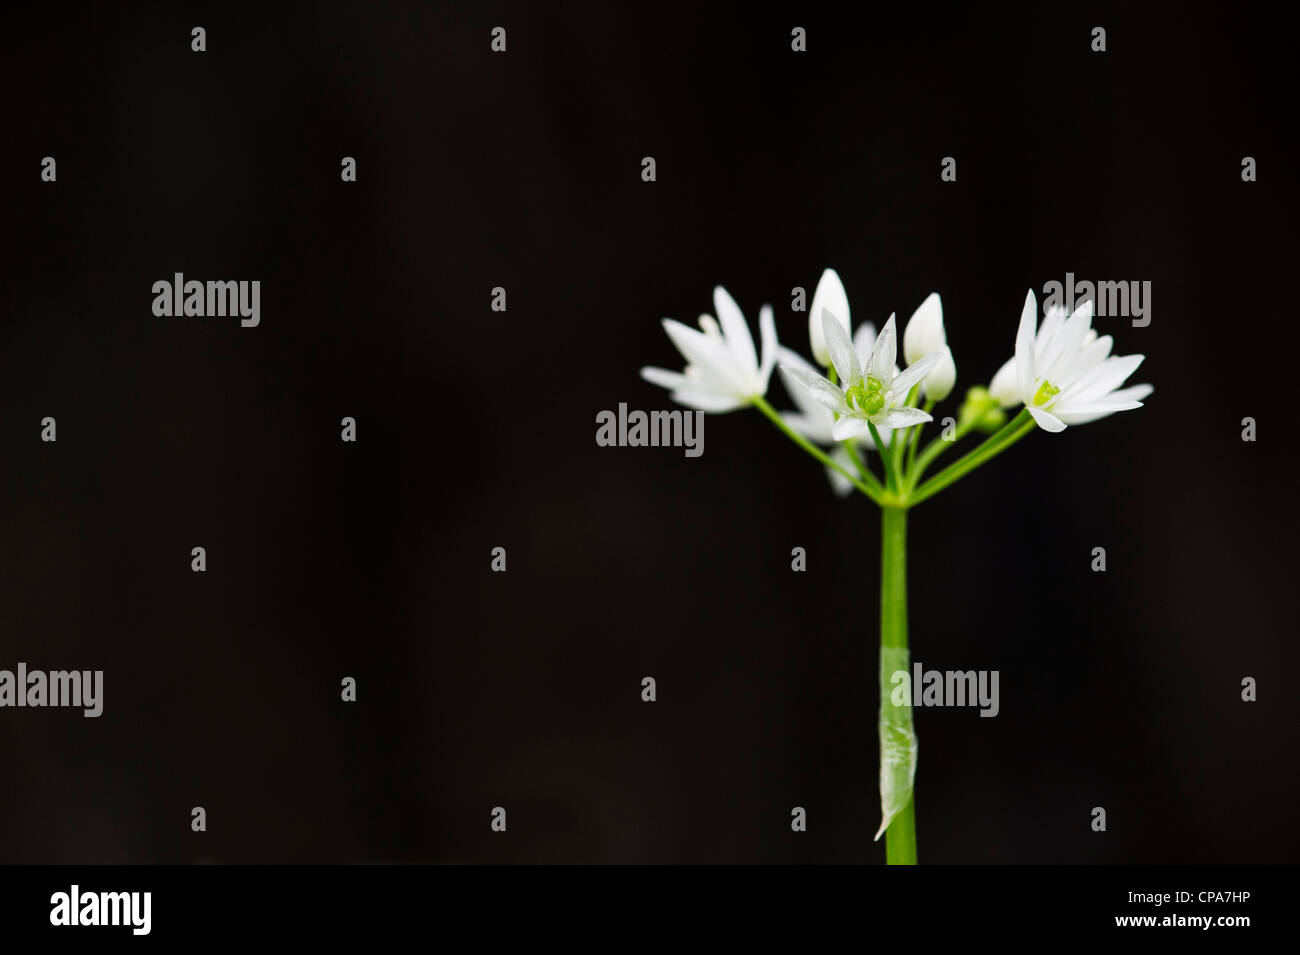 Allium ursinum. Ramsons. Legno / aglio aglio selvatico fiori contro uno sfondo scuro Foto Stock